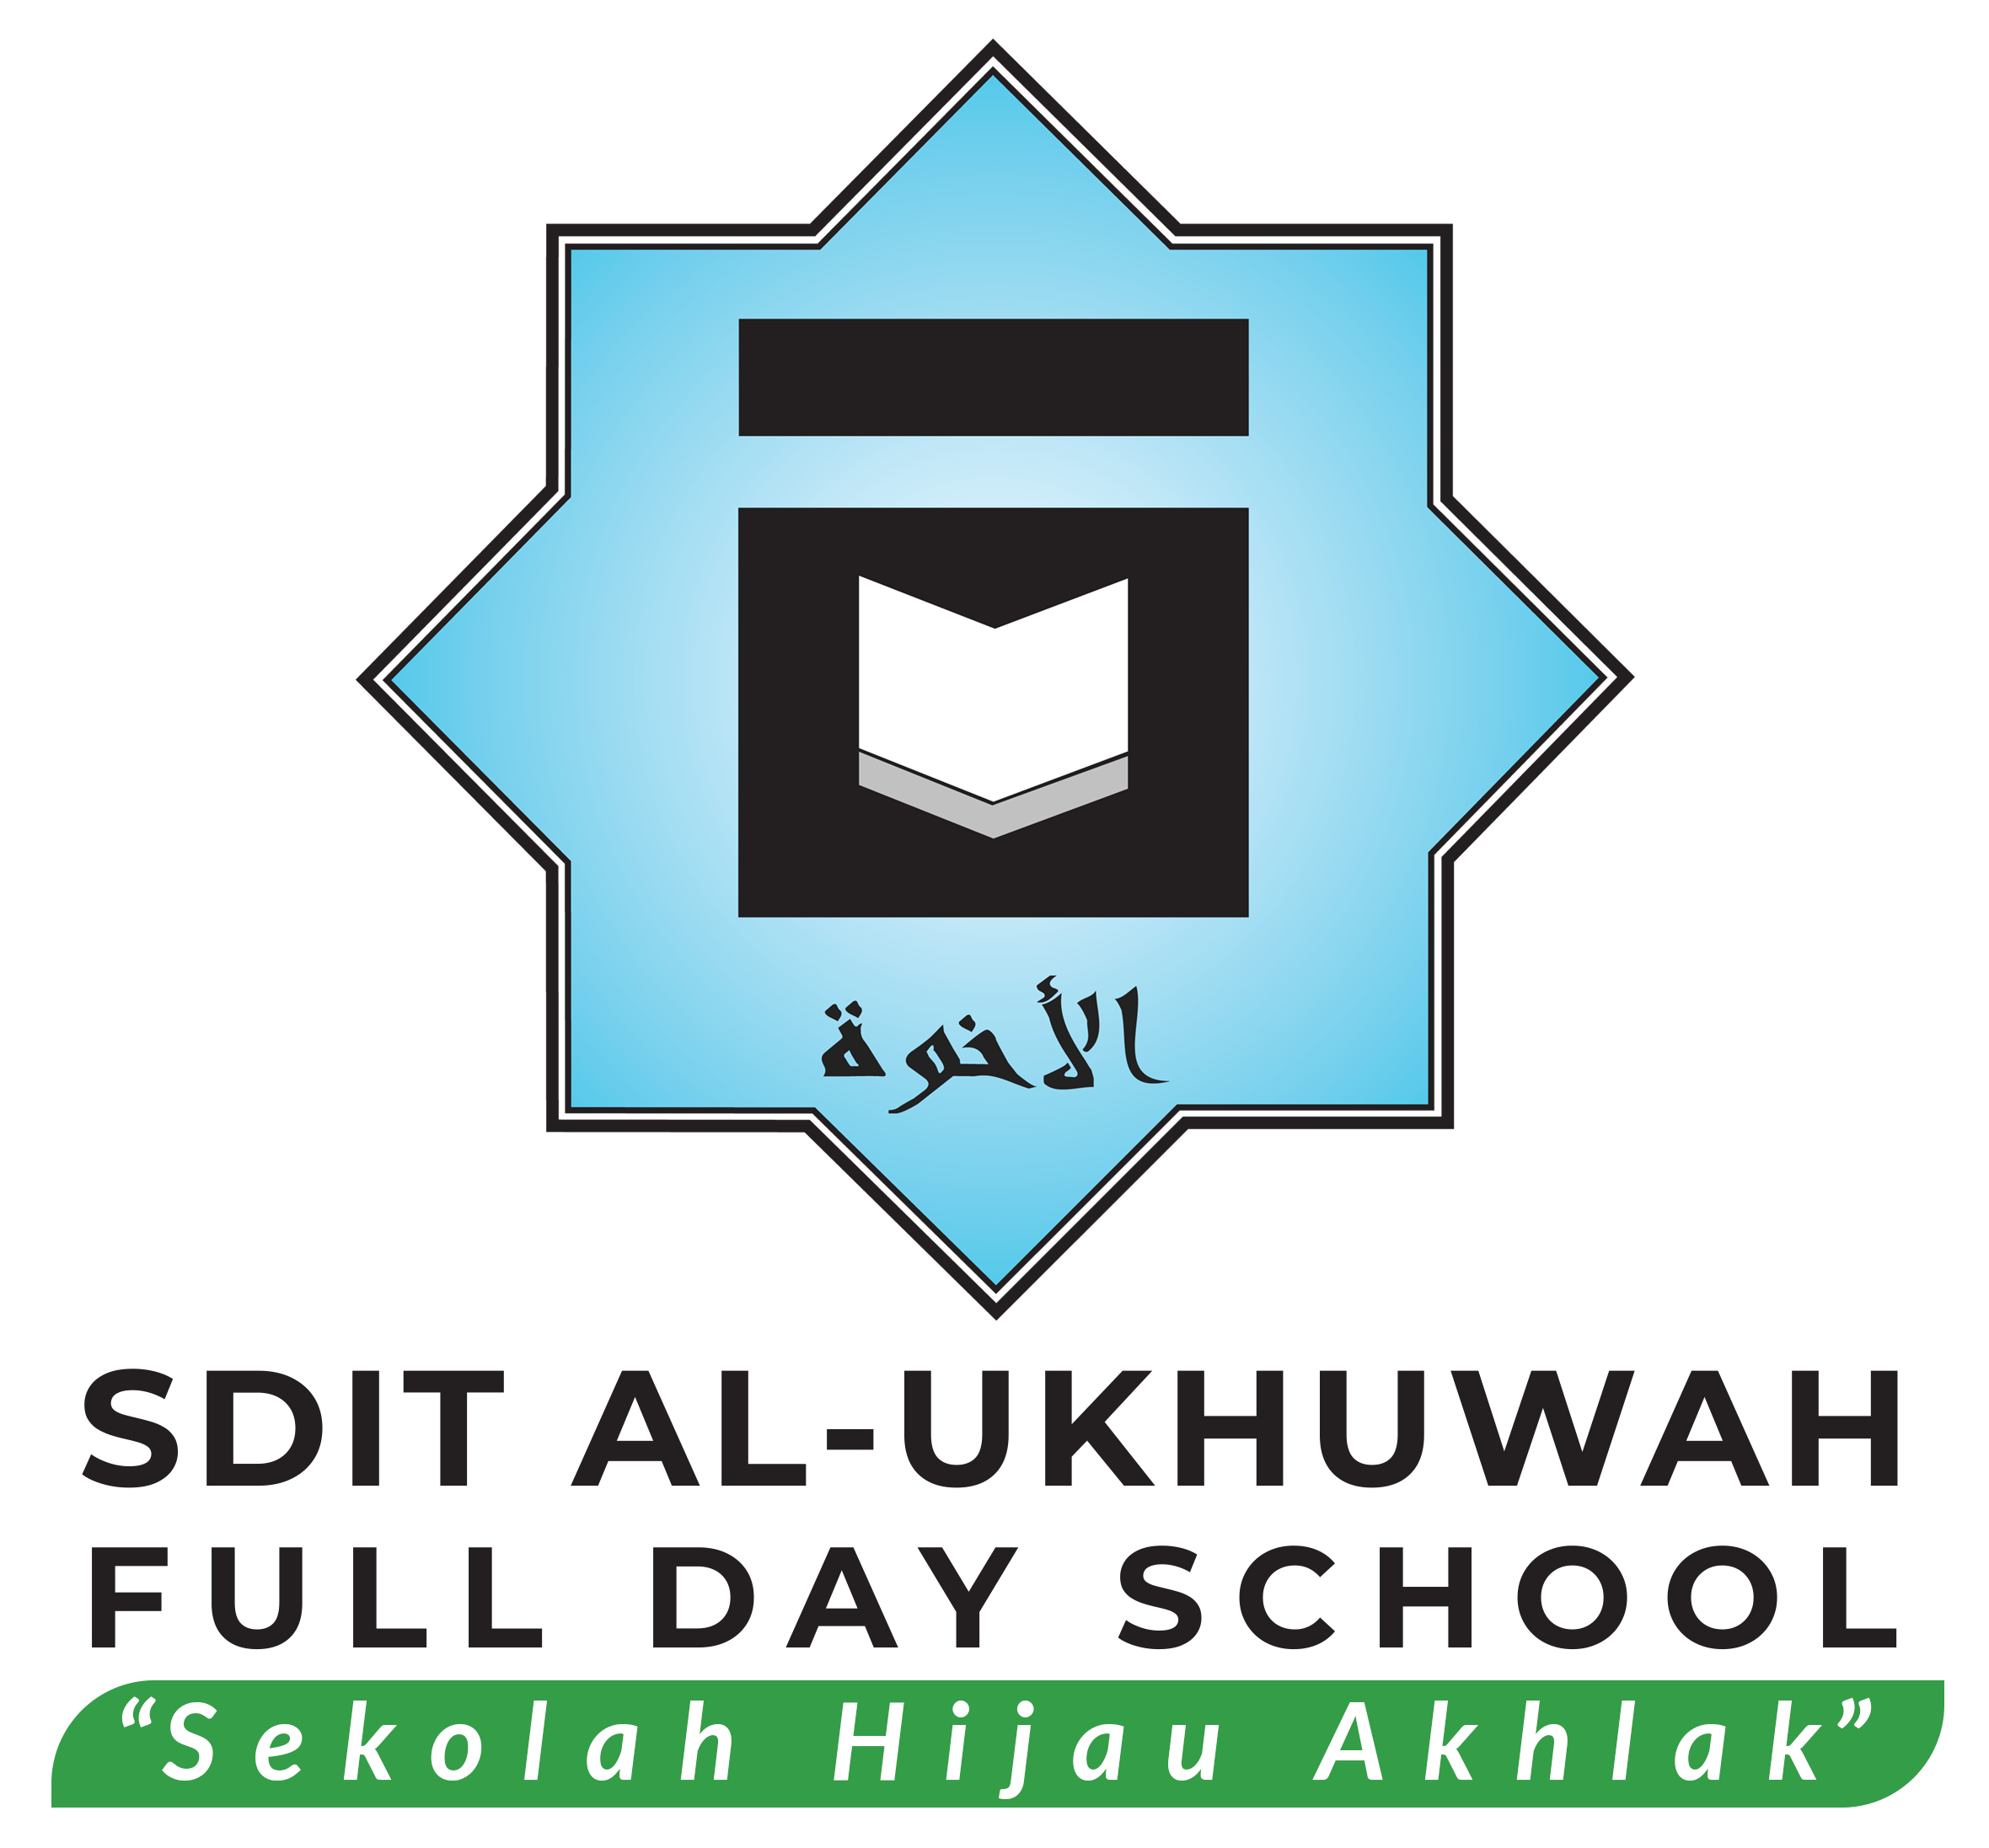 SDIT AL-UKHUWAH FULL DAY SCHOOL